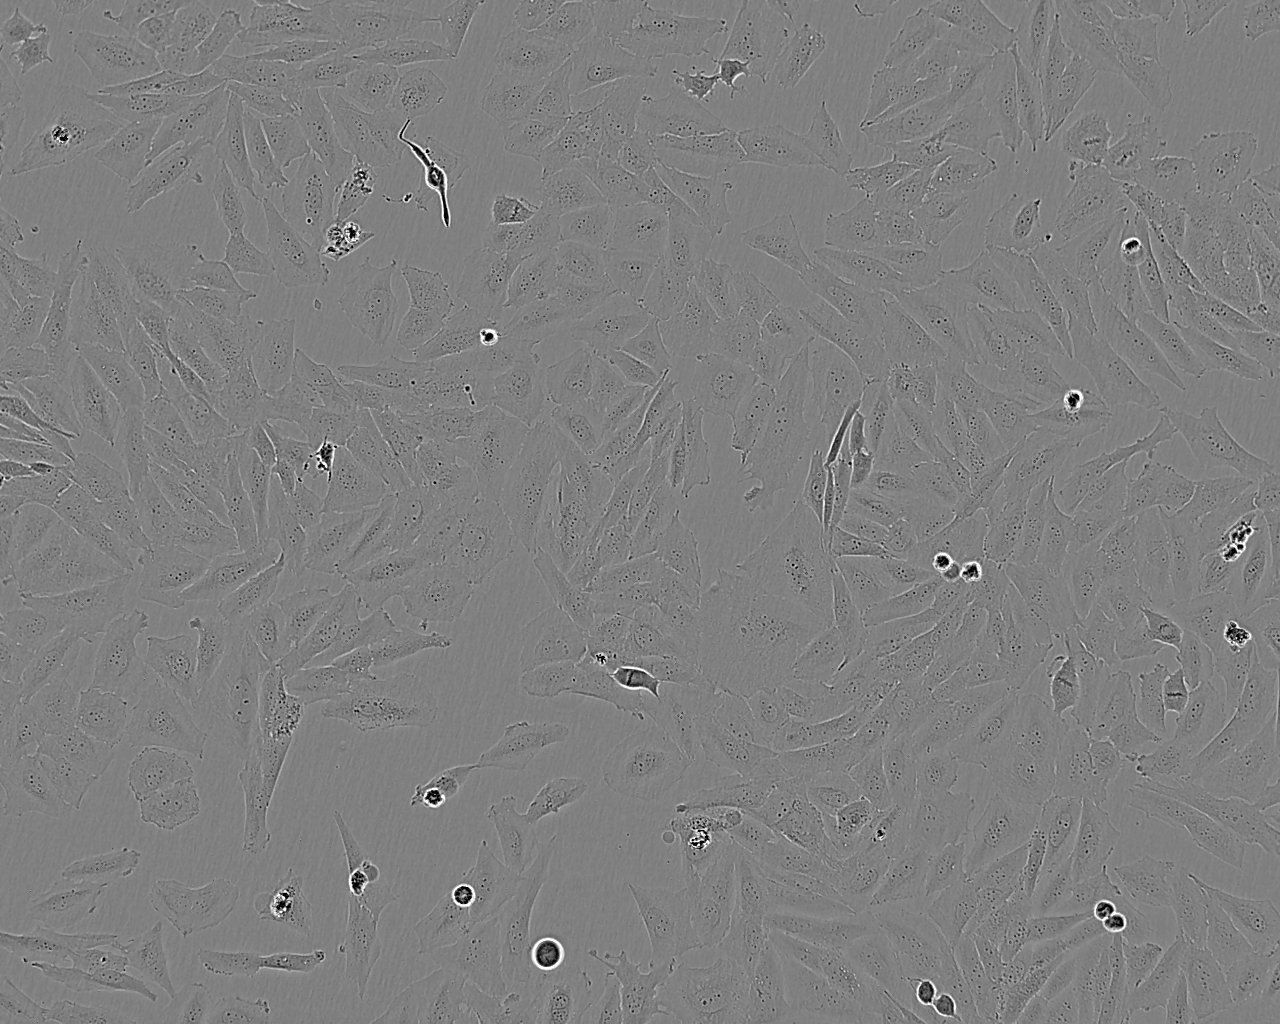 NCI-H1581 Cells|人非小细胞肺癌细胞系